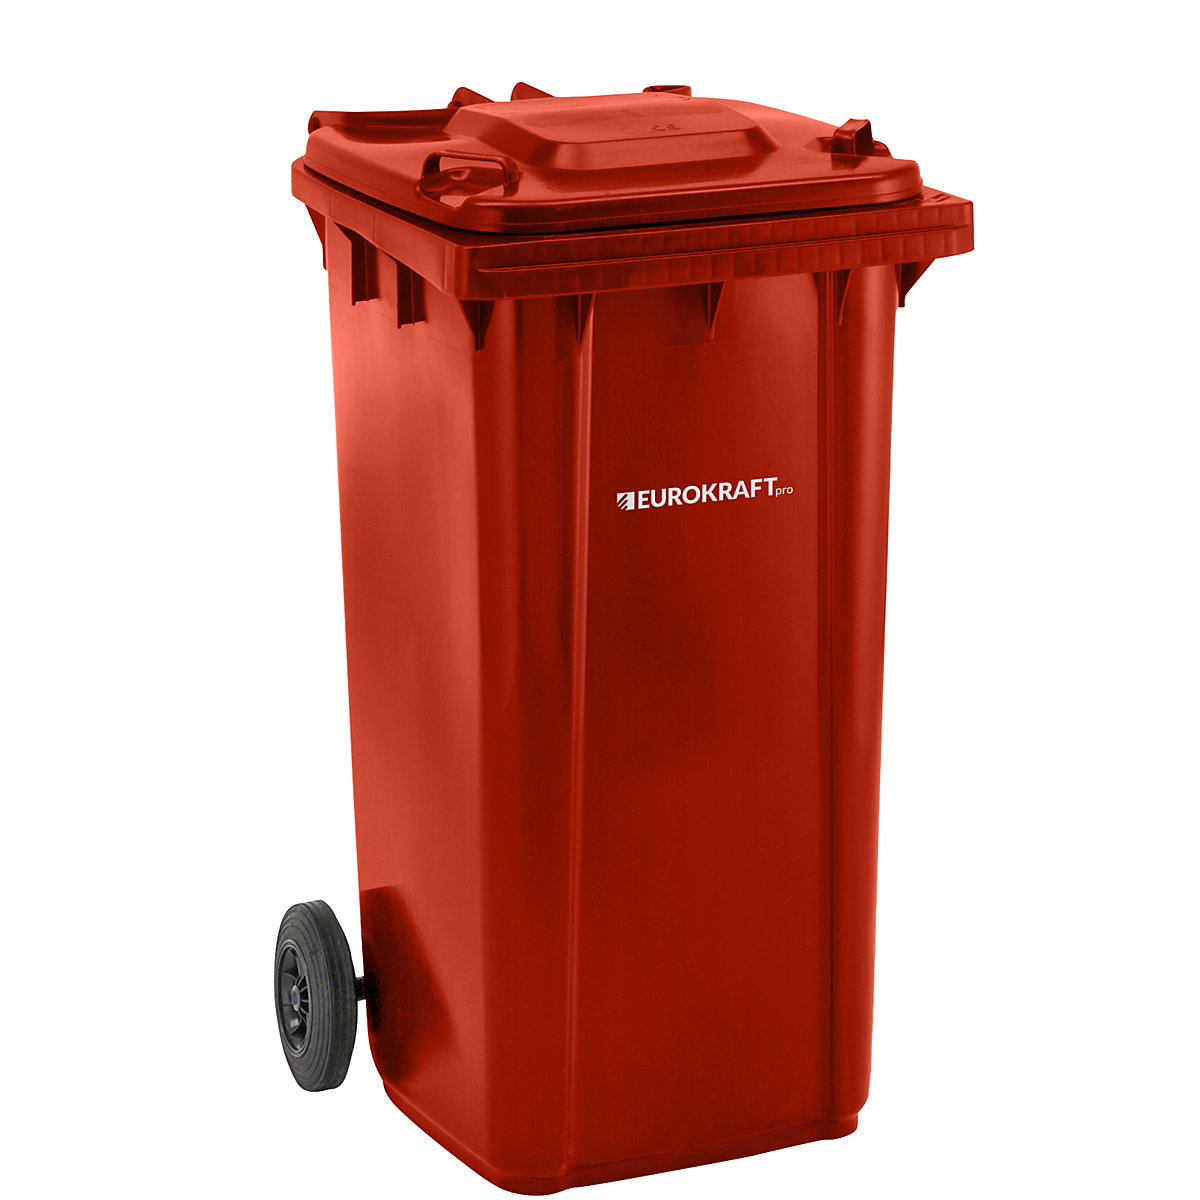 Kanta za smeće od plastike DIN EN 840 – eurokraft pro, volumen 240 l, ŠxVxD 580 x 1100 x 740 mm, u crvenoj boji-5